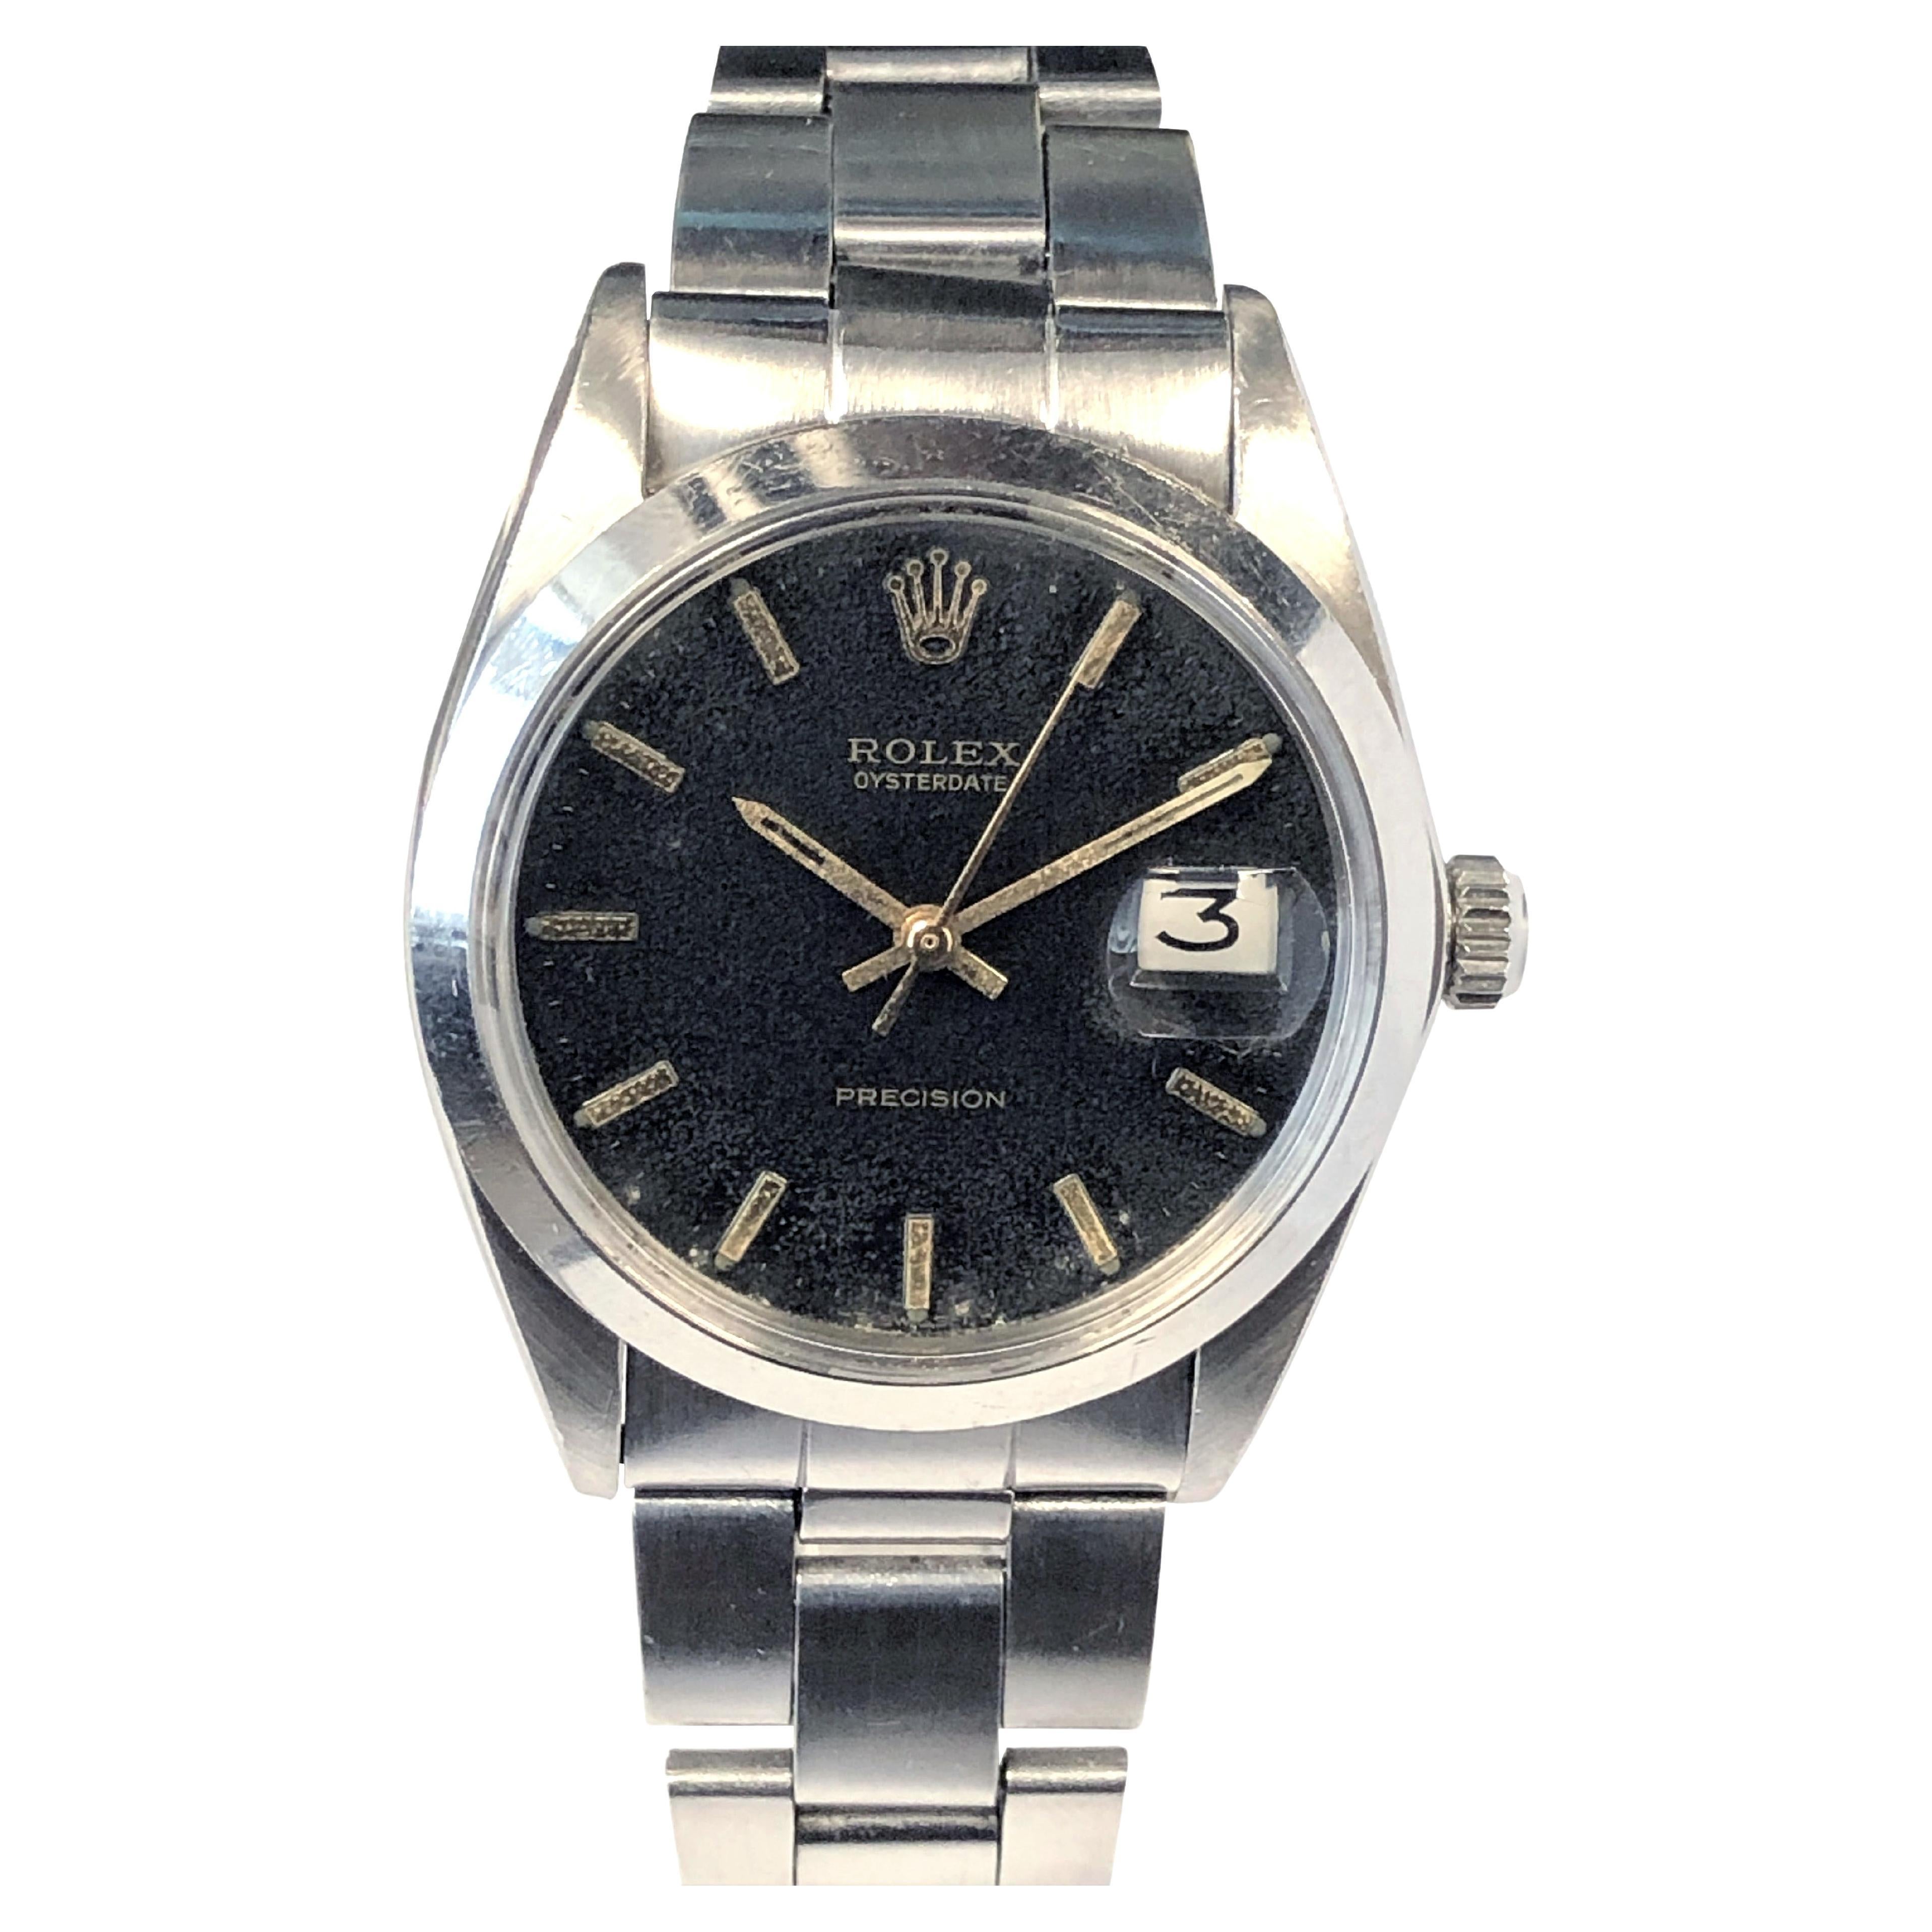 Rolex 1960s Oysterdate Precision 6694 Steel Wrist Watch